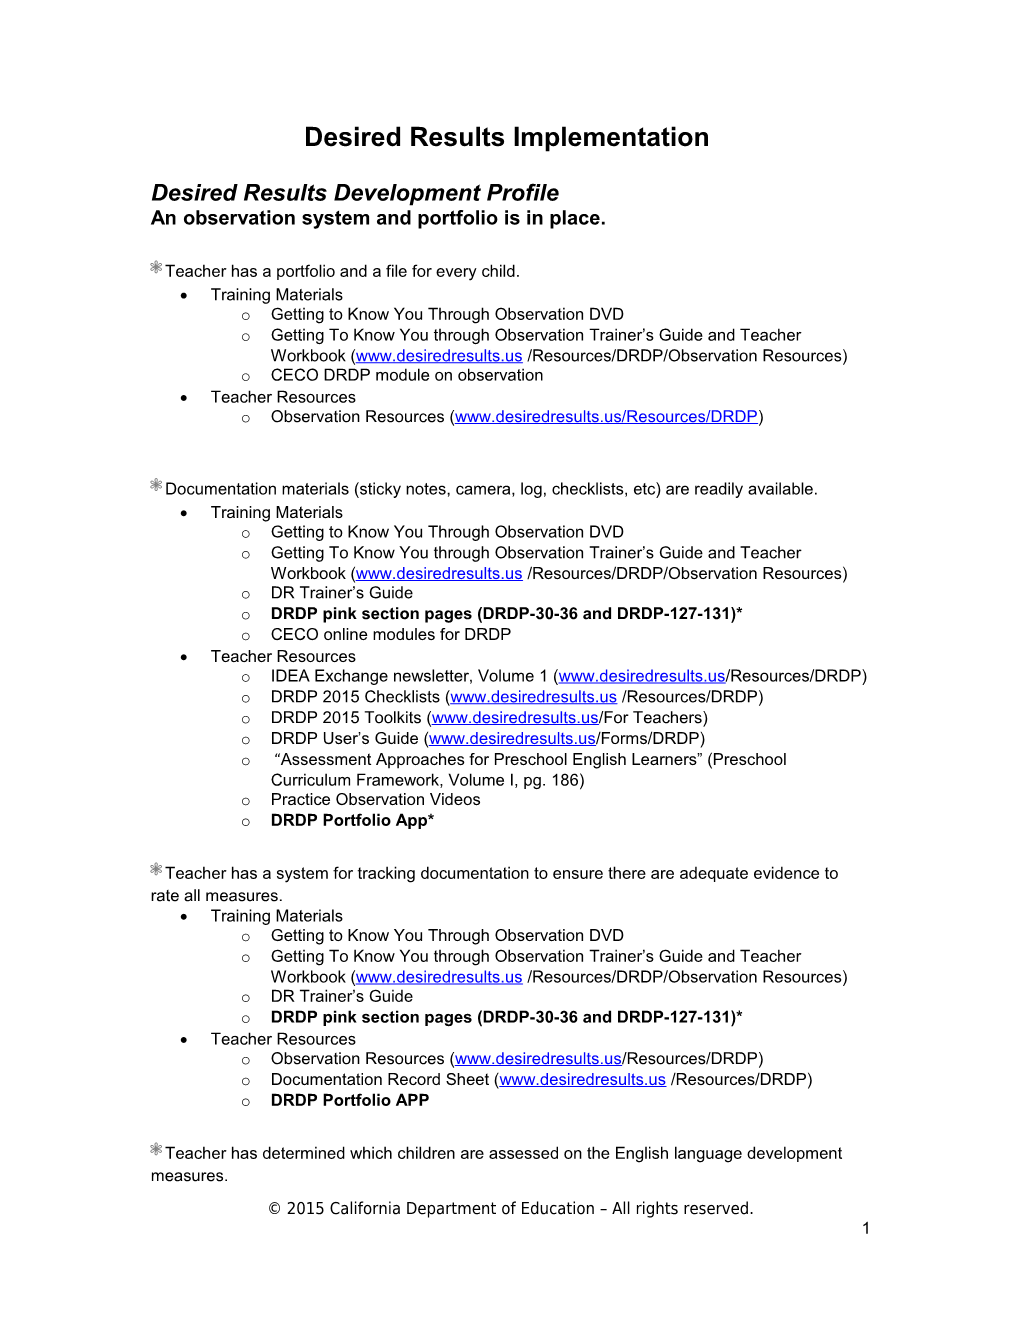 Desired Results Development Profile